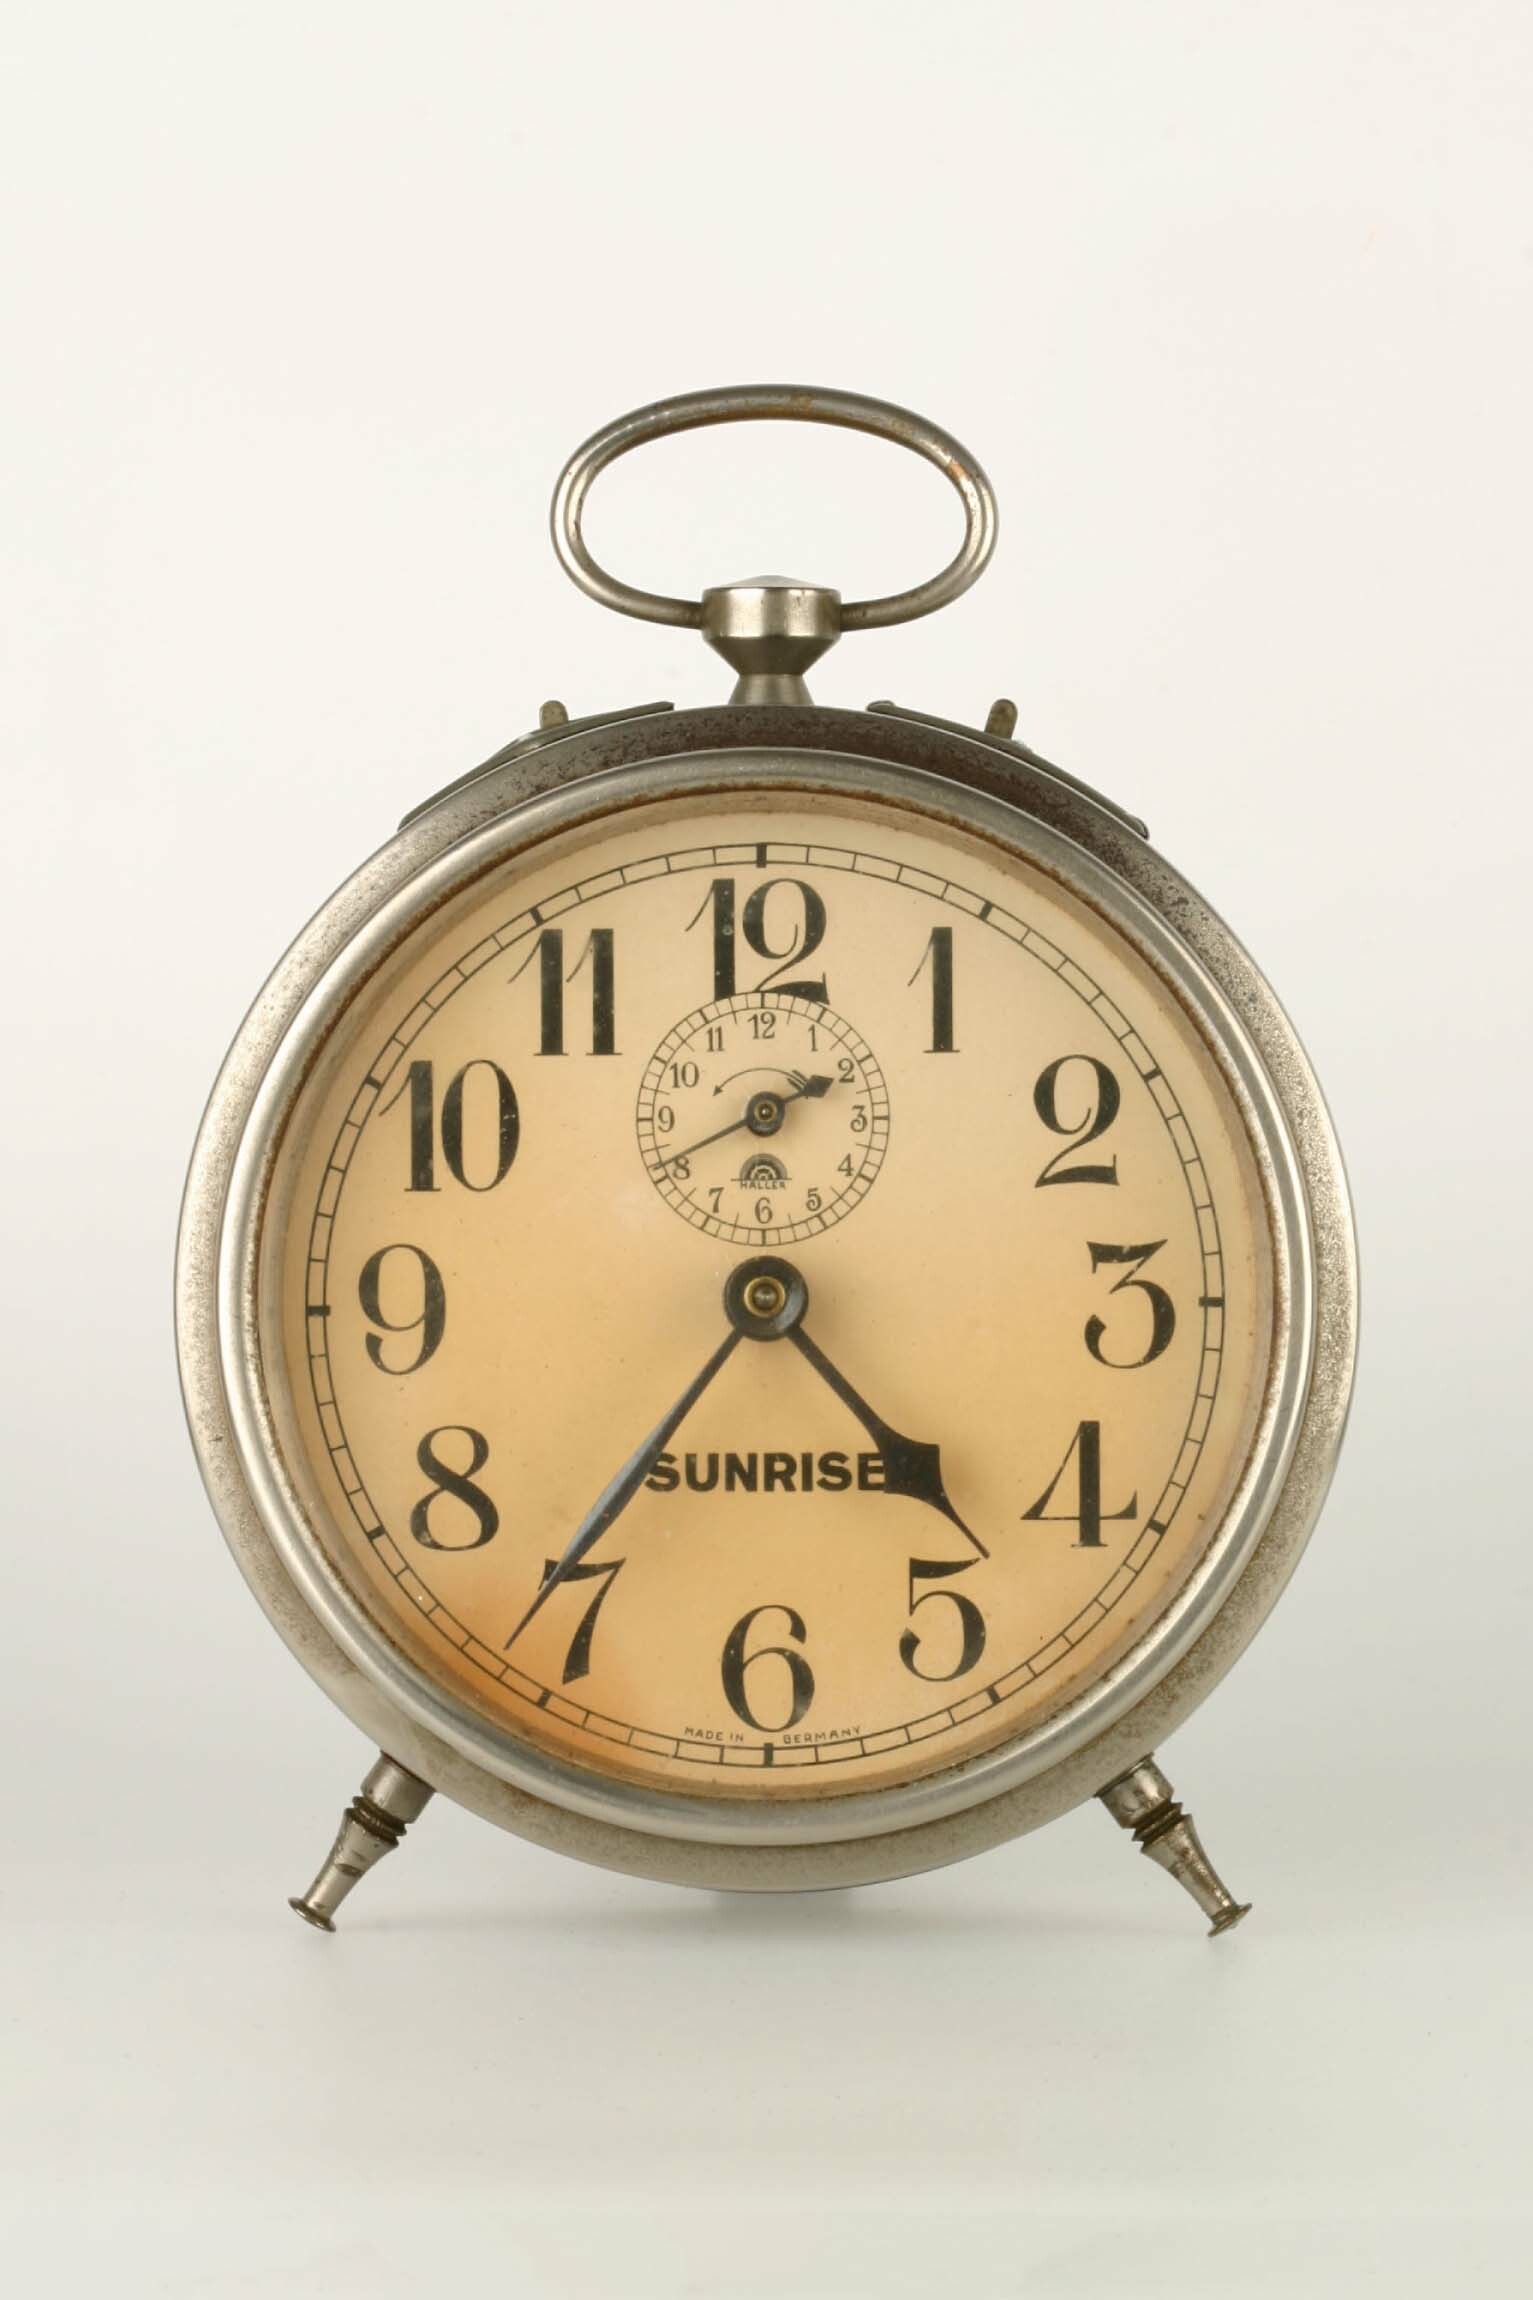 Rückwandglockenwecker, Haller-Kienzle, Schramberg, um 1930 (Deutsches Uhrenmuseum CC BY-SA)